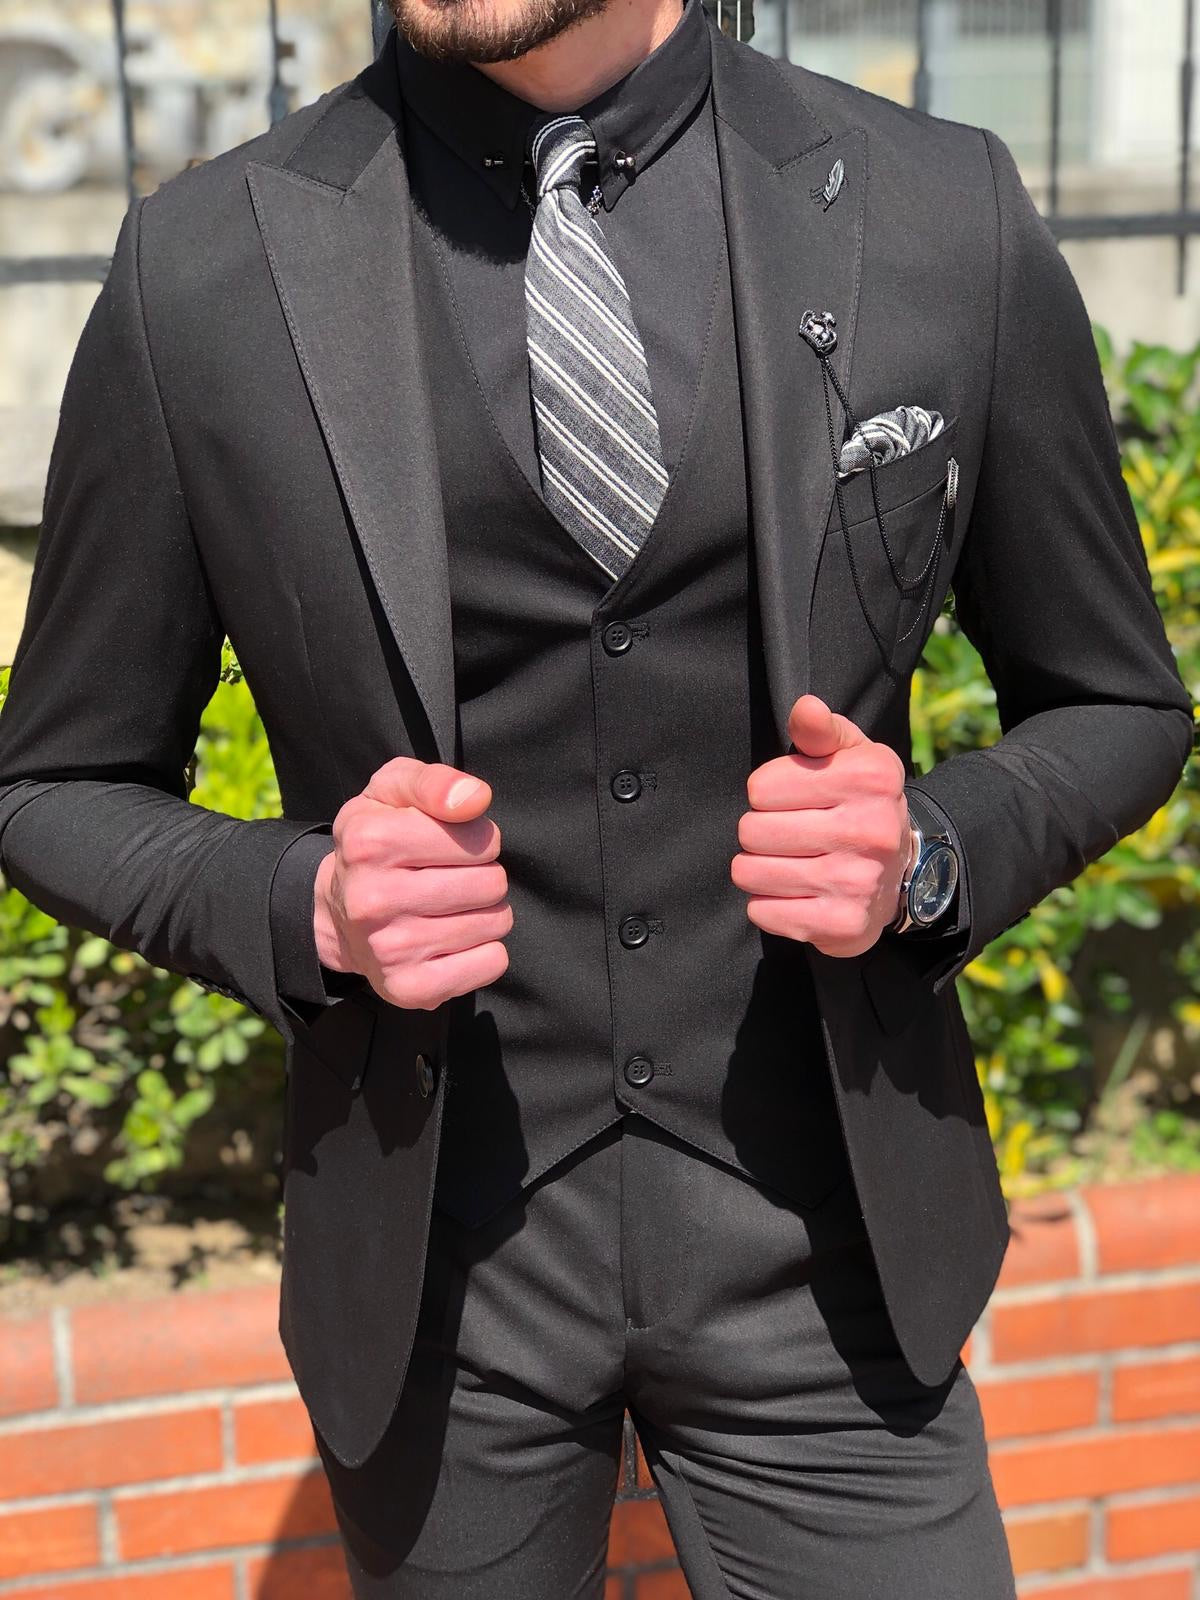 Boys suit black + vest gray | ascot tie - Paul Malone Shop